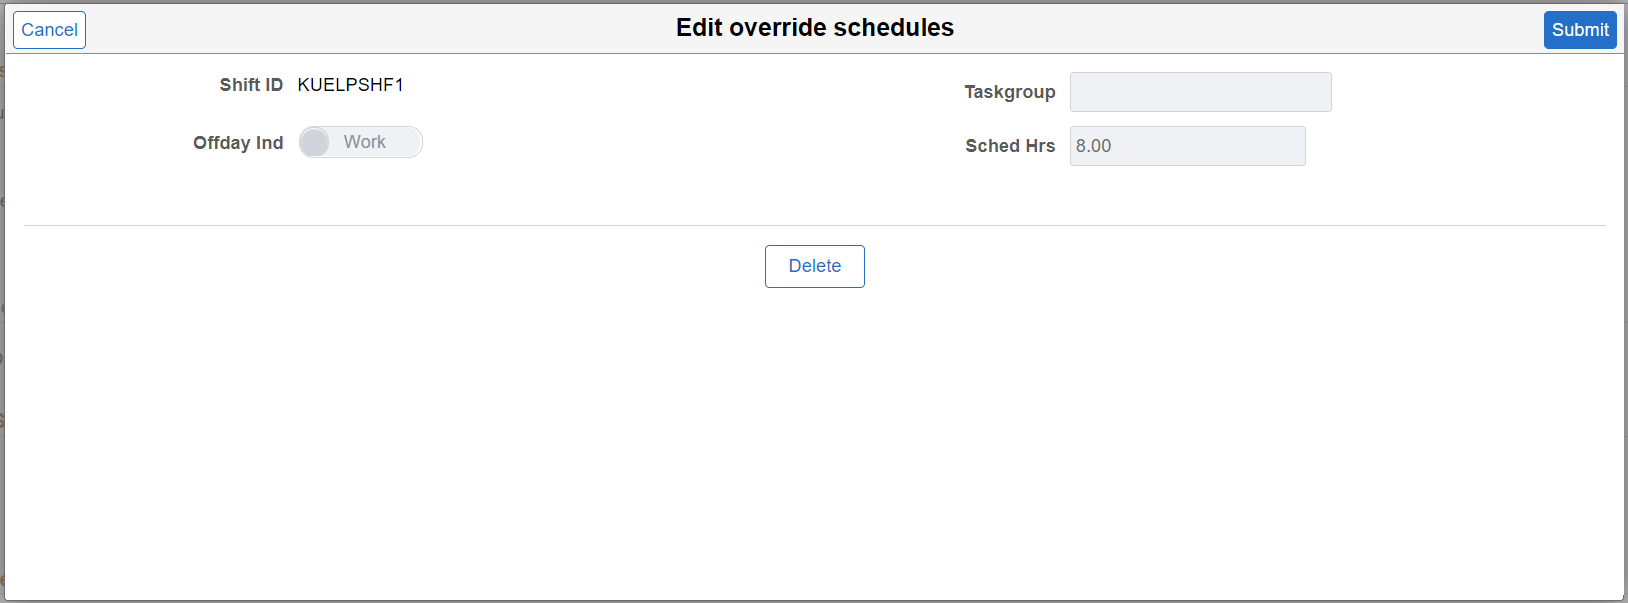 Edit override schedules